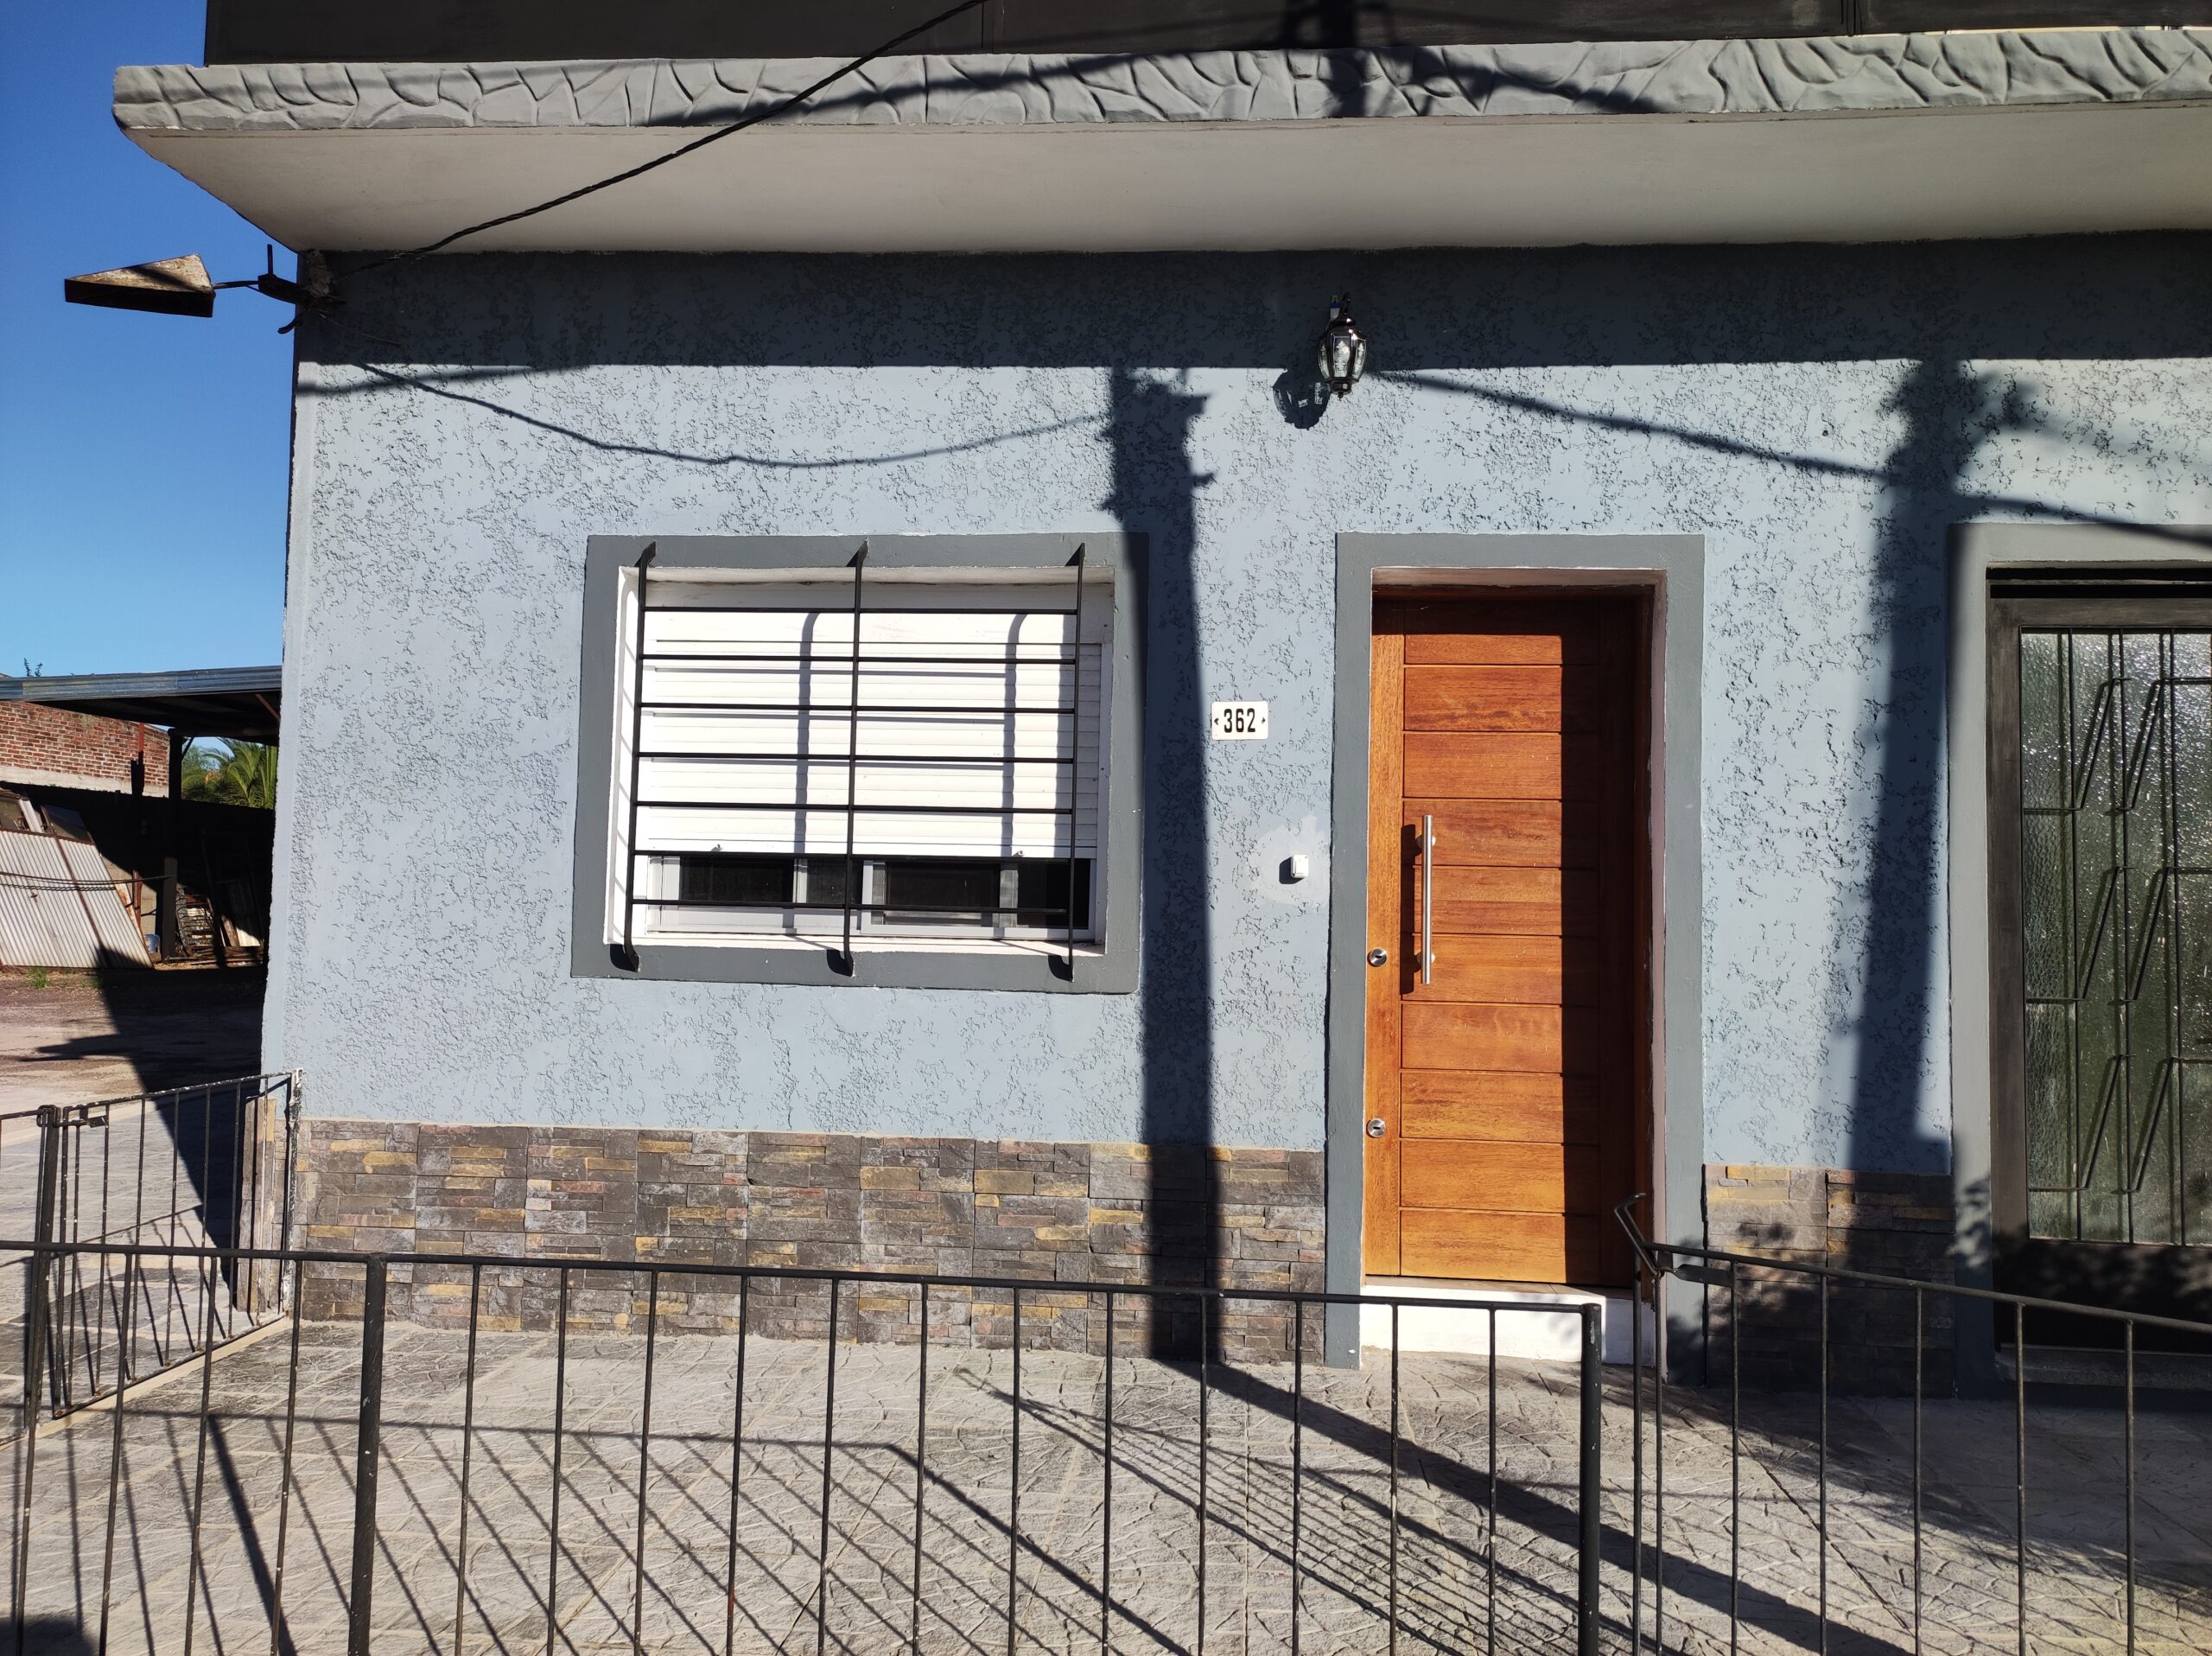 Se alquila apartamento totalmente restaurado a estrenar en zona centro de la ciudad de Paso de los Toros Ref. PTA 325